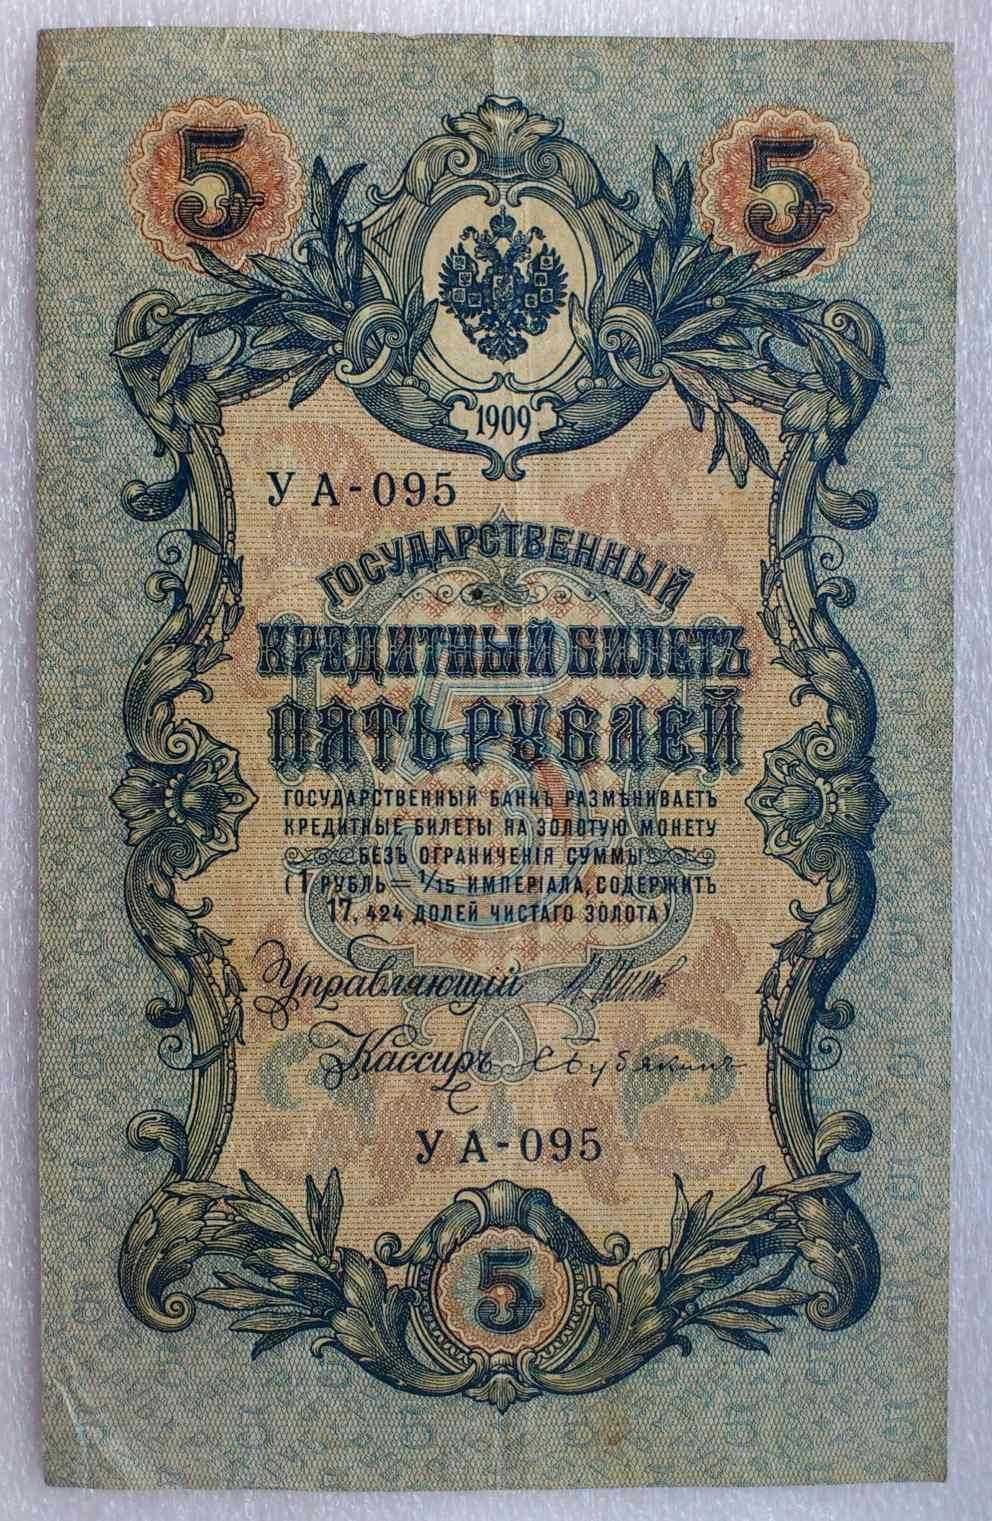 5 руб 1909 г. Государственный кредитный билет. Шипов, Бубякин. XF